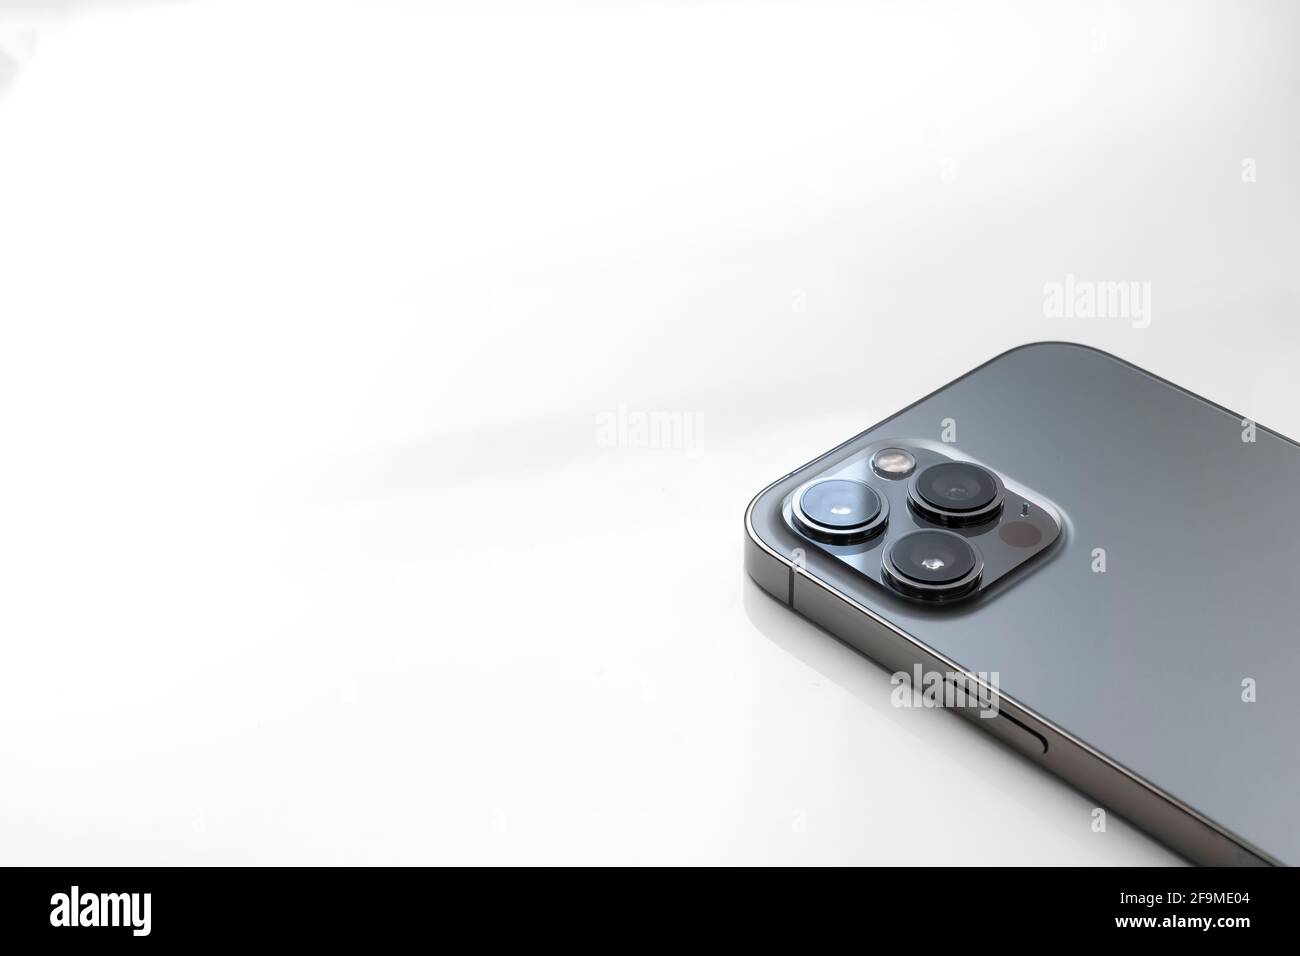 Dettaglio di un Apple iPhone 12 Pro Max rivolto verso il basso su uno sfondo fiancheggiato con spazio per la copia, mostrando i suoi tre obiettivi della fotocamera, orizzontale Foto Stock